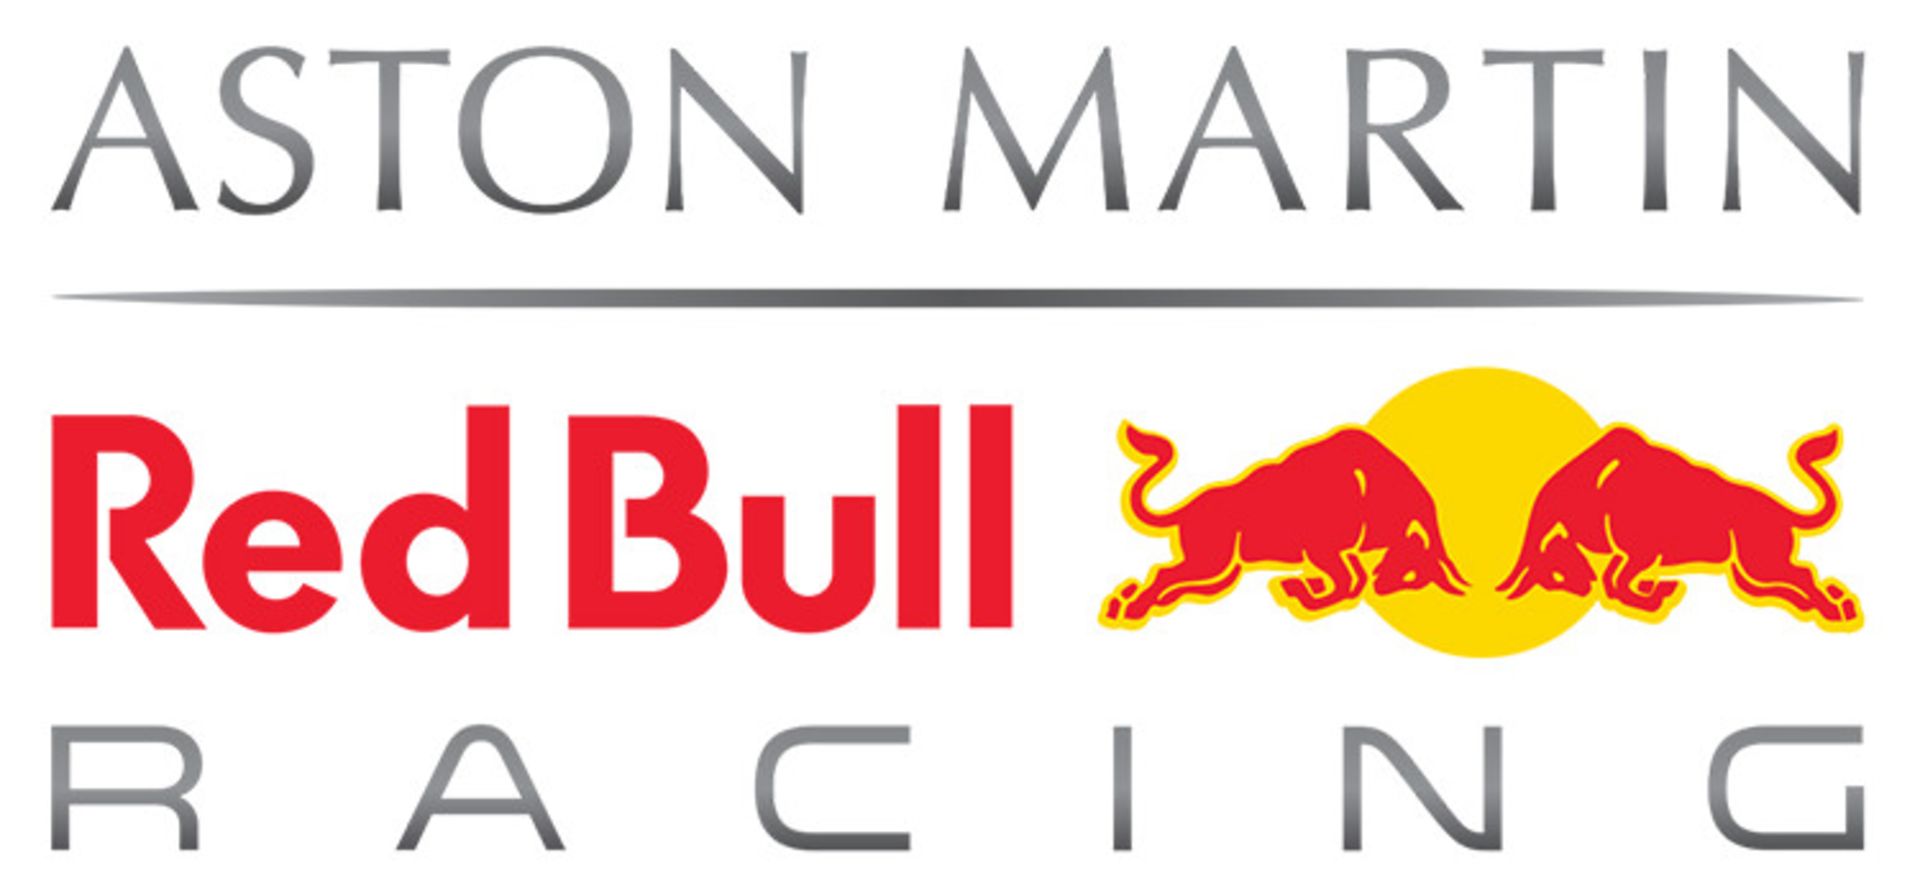 Aston Martin RedBull Racing